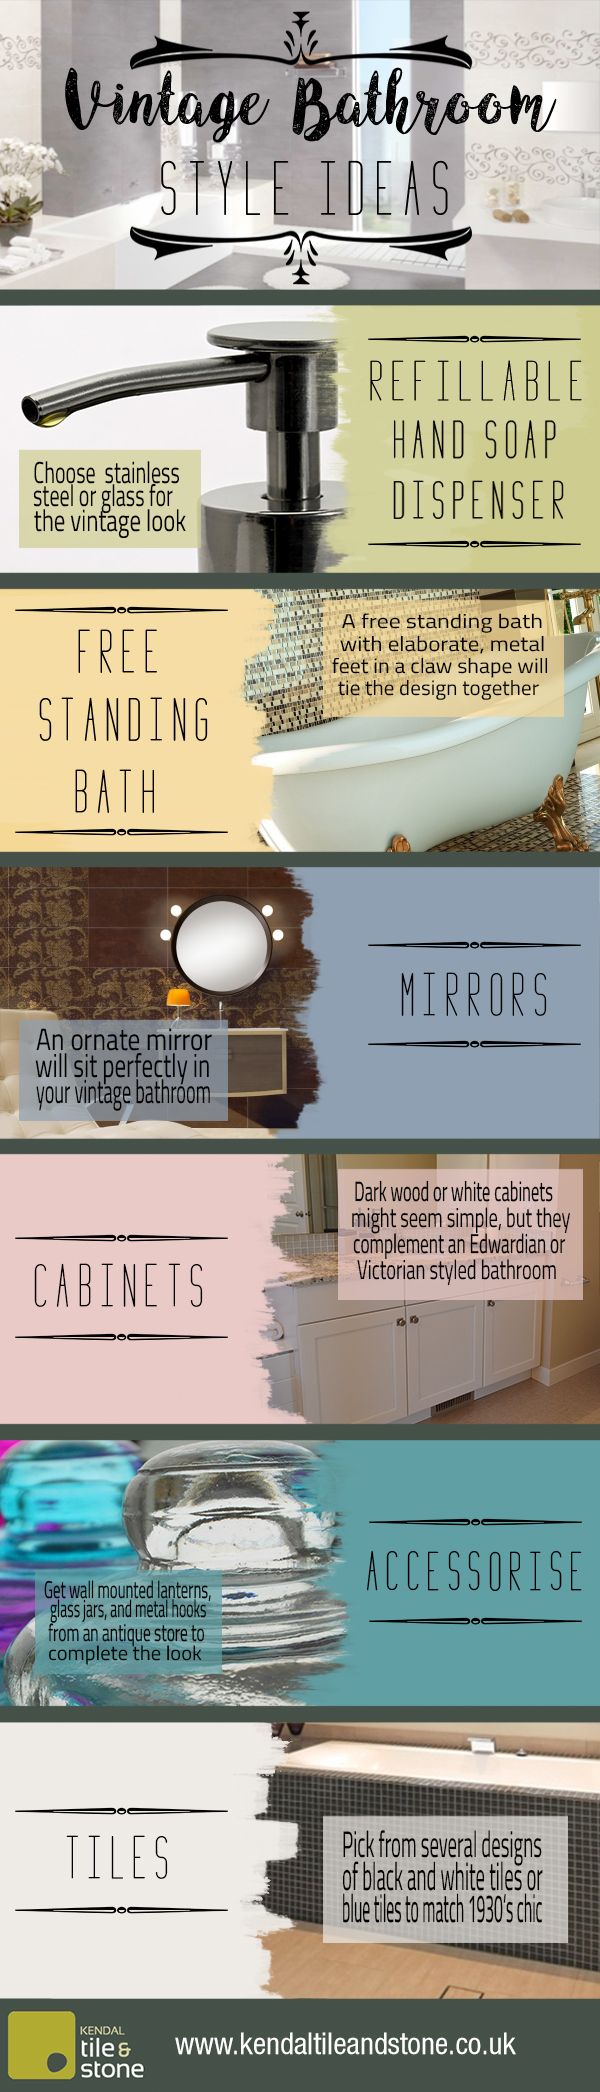 Kwaadaardige tumor luchthaven Onweersbui Vintage Bathroom Style Ideas [Infographic]